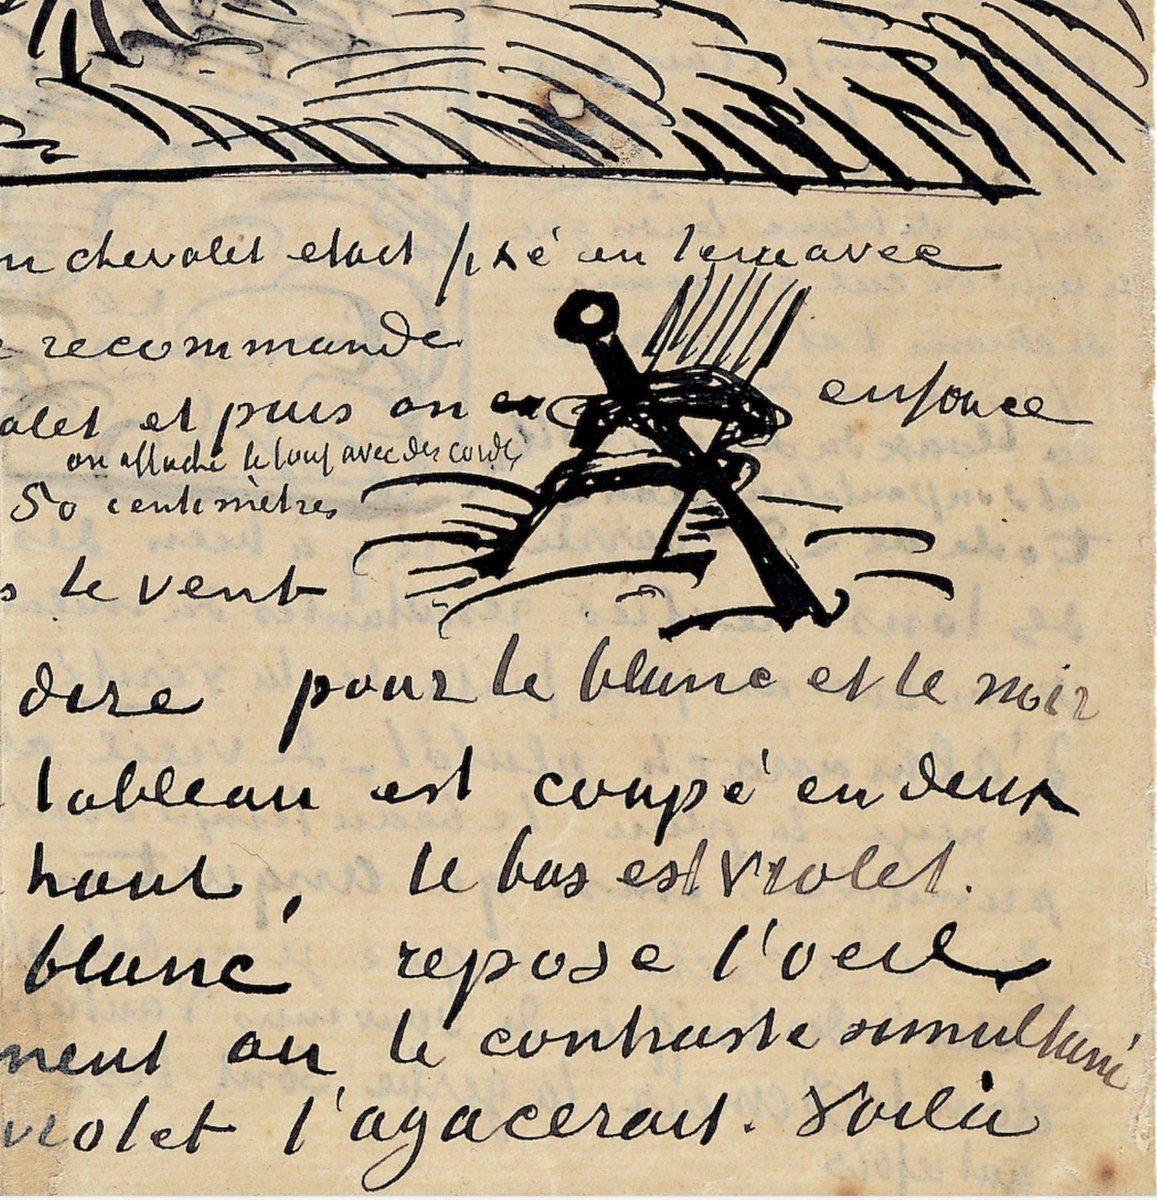 Van Gogh, açık havada resim yaptığı için rüzgar konusunda sıkıntı yaşıyordu. Theo'ya yazdığı bir mektupta 'rüzgarda resim yapma konusunda çok sıkıntı çekiyorum ama sehpamı yere sabitleyip çalışabiliyorum' diye yazdı. sabitleme için de yaklaşık 50 cm'lik demir kazıklar